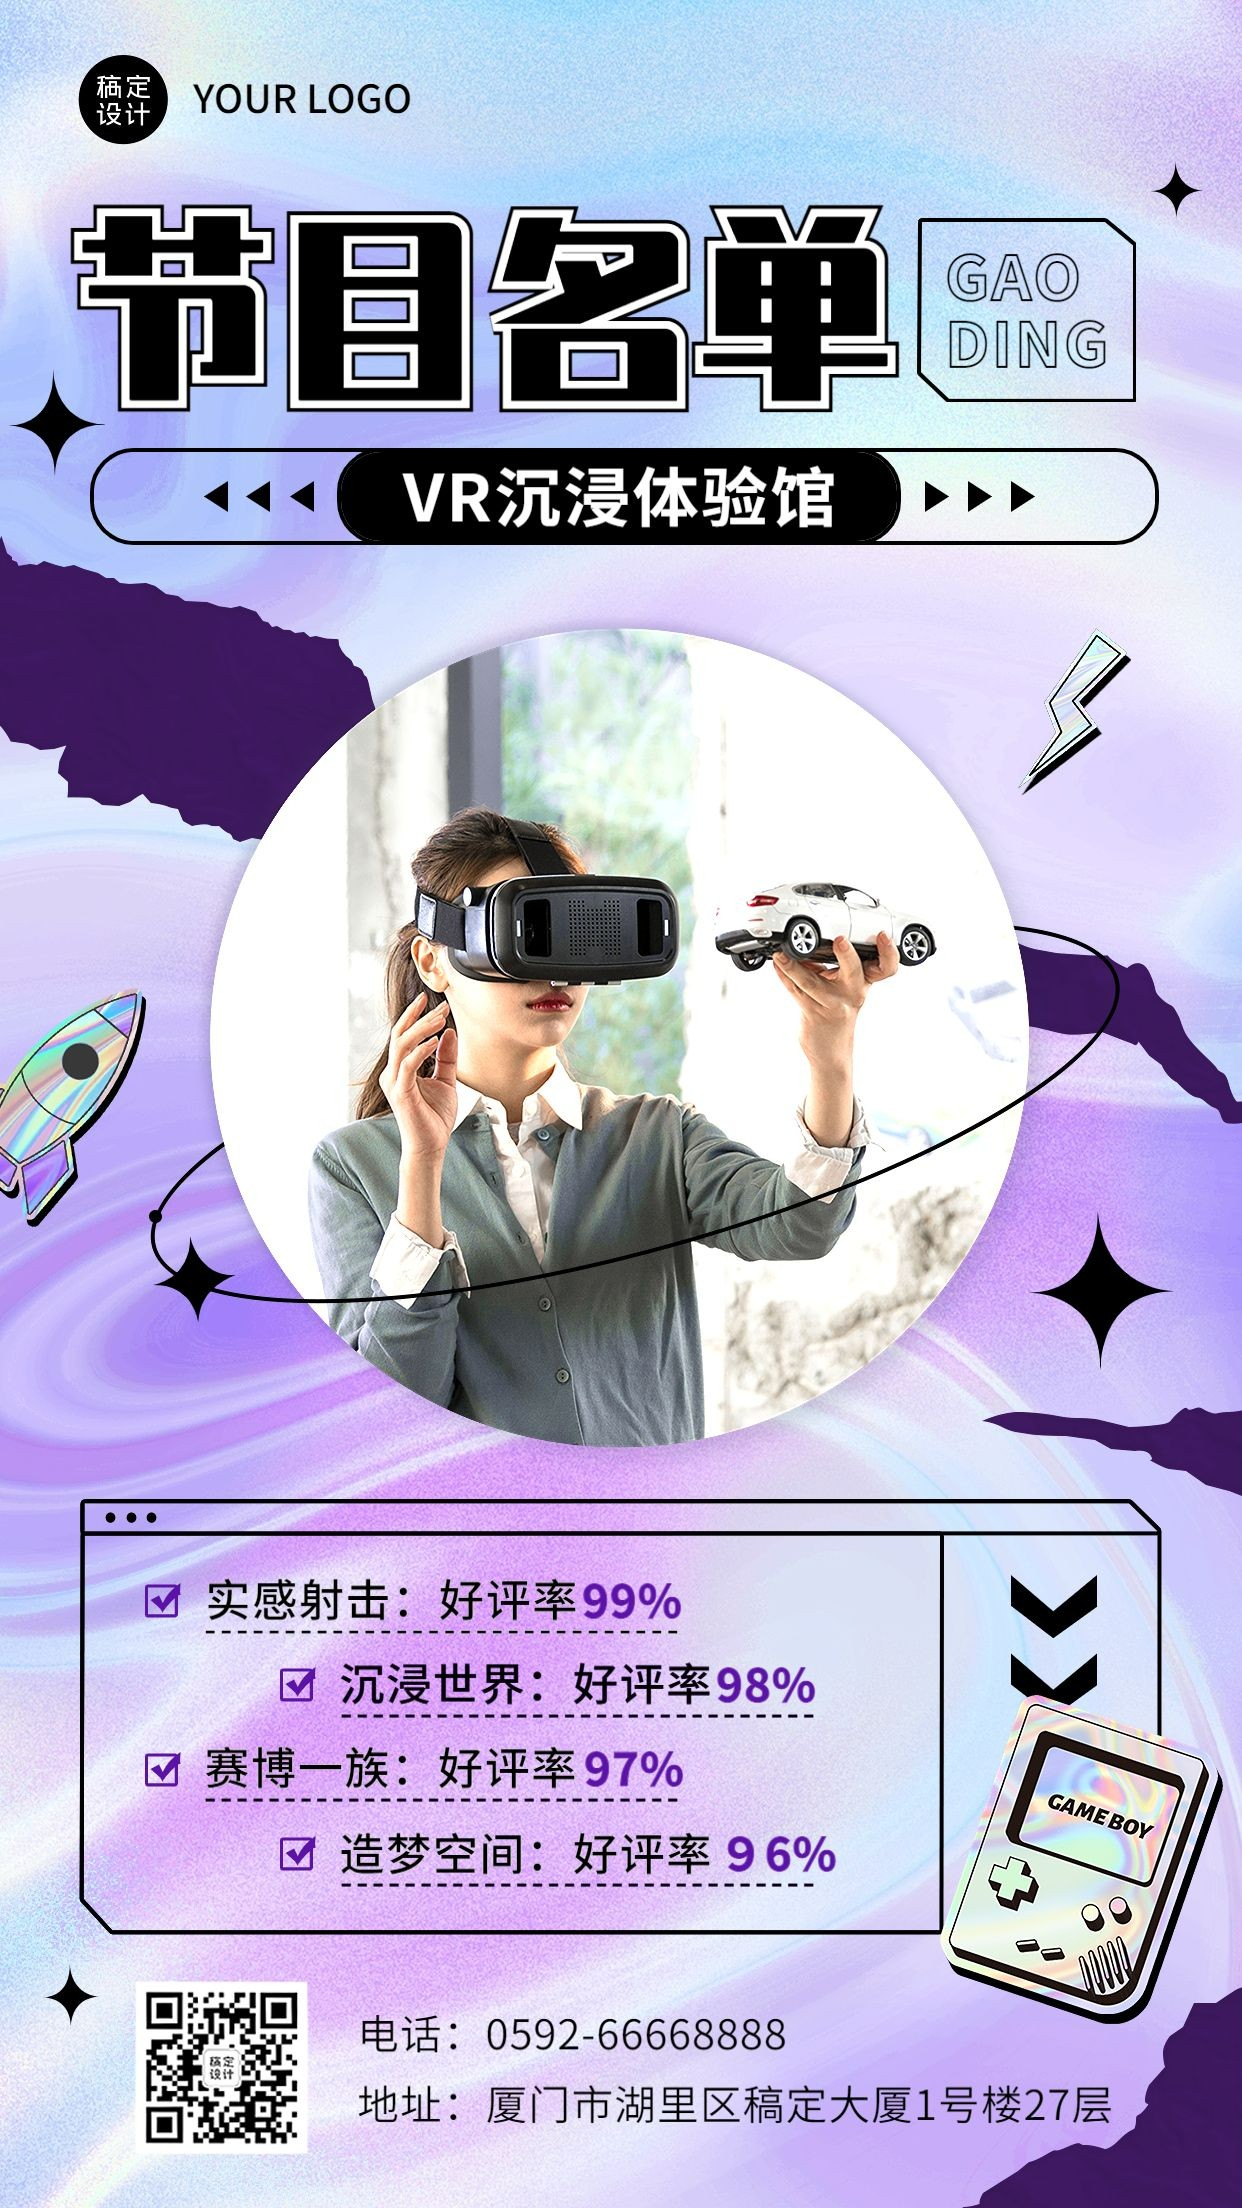 VR体验馆节目促销活动宣传海报预览效果